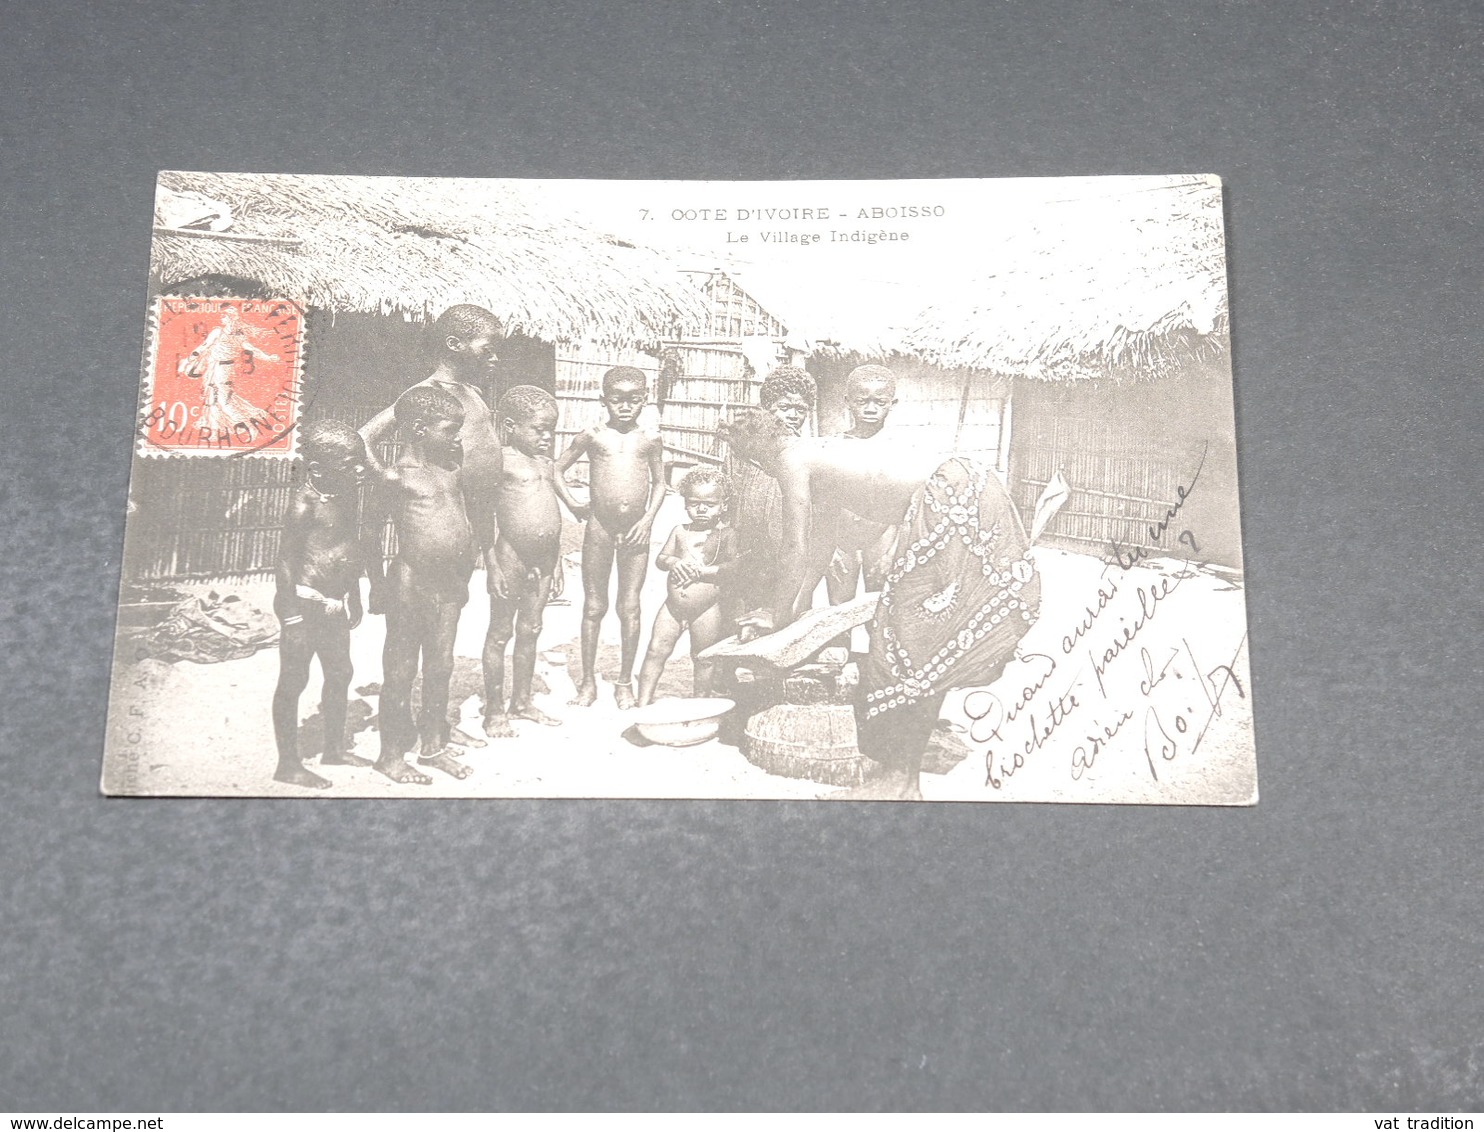 CÔTE D 'IVOIRE - Carte Postale - Aboisso - Le Village Indigène - L 19213 - Elfenbeinküste